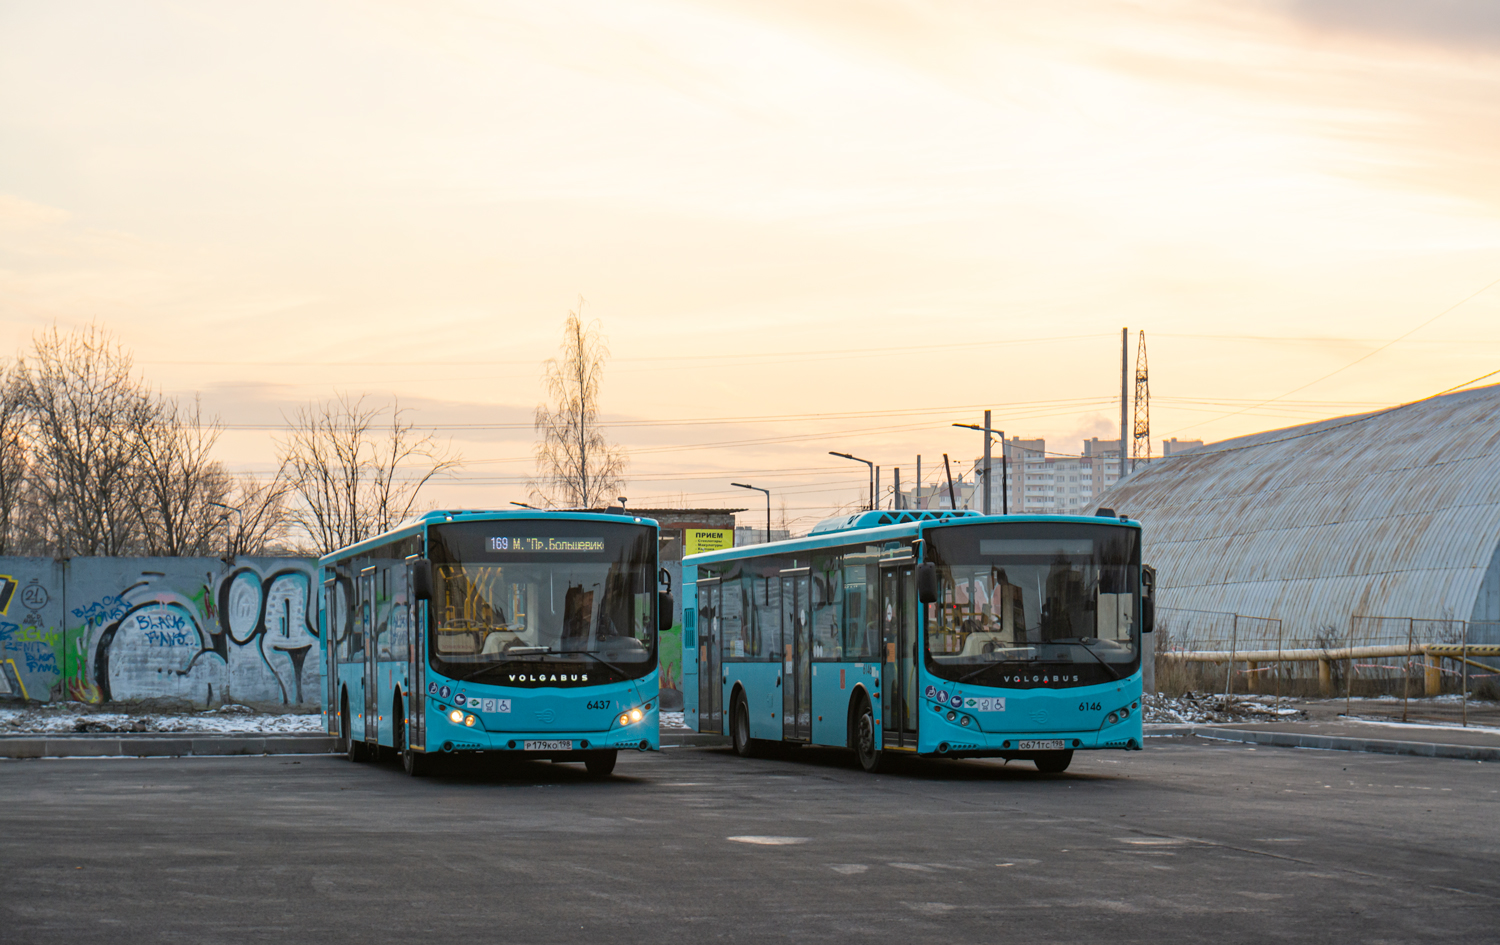 Saint-Pétersbourg, Volgabus-5270.G2 (LNG) # 6437; Saint-Pétersbourg, Volgabus-5270.G2 (LNG) # 6146